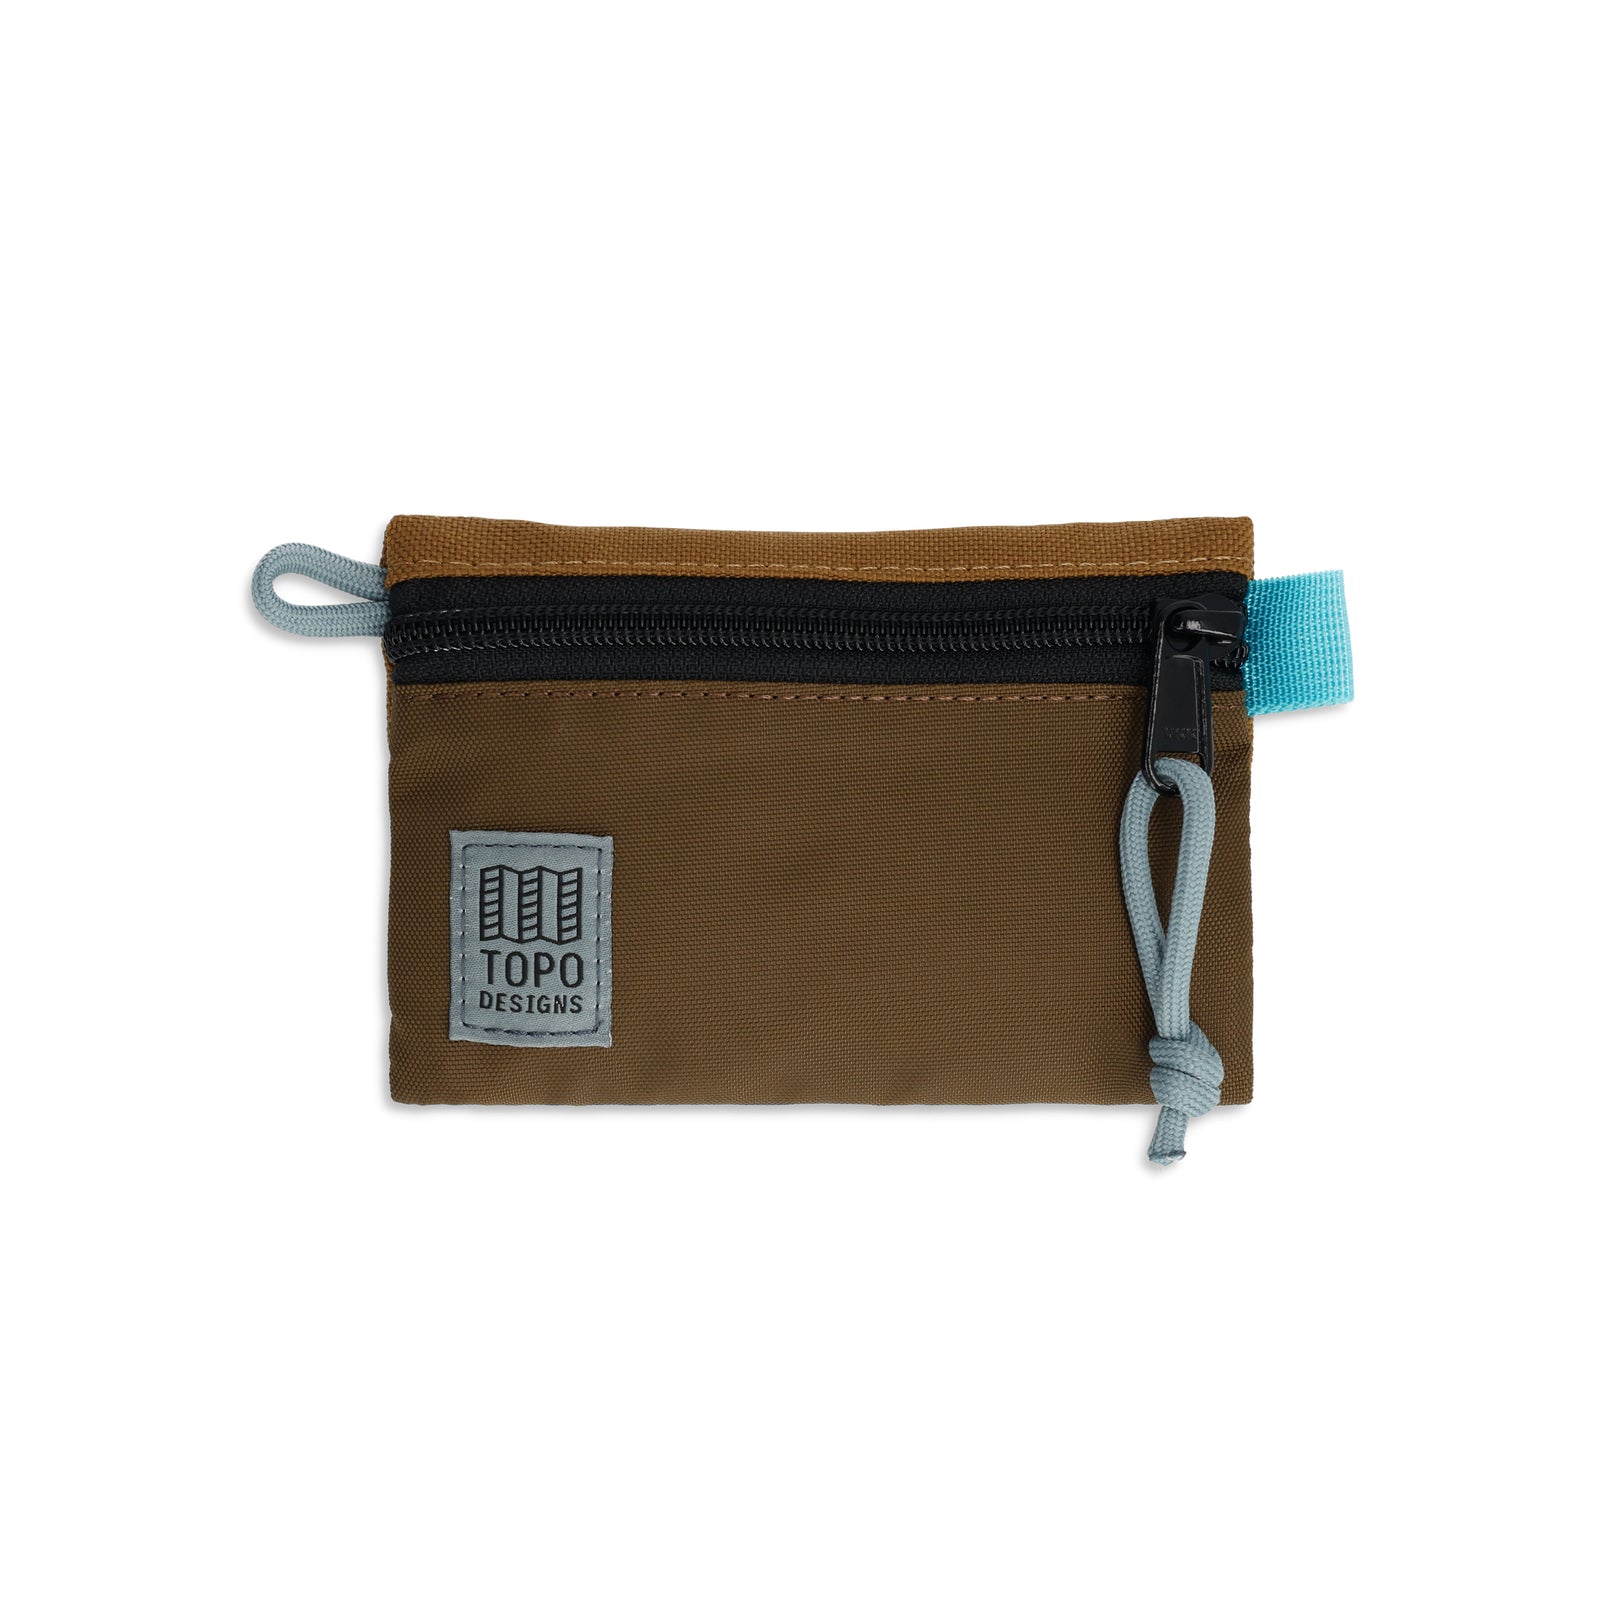 Topo Designs Accessory Bag "Micro" in "Desert Palm / Pond Blue"